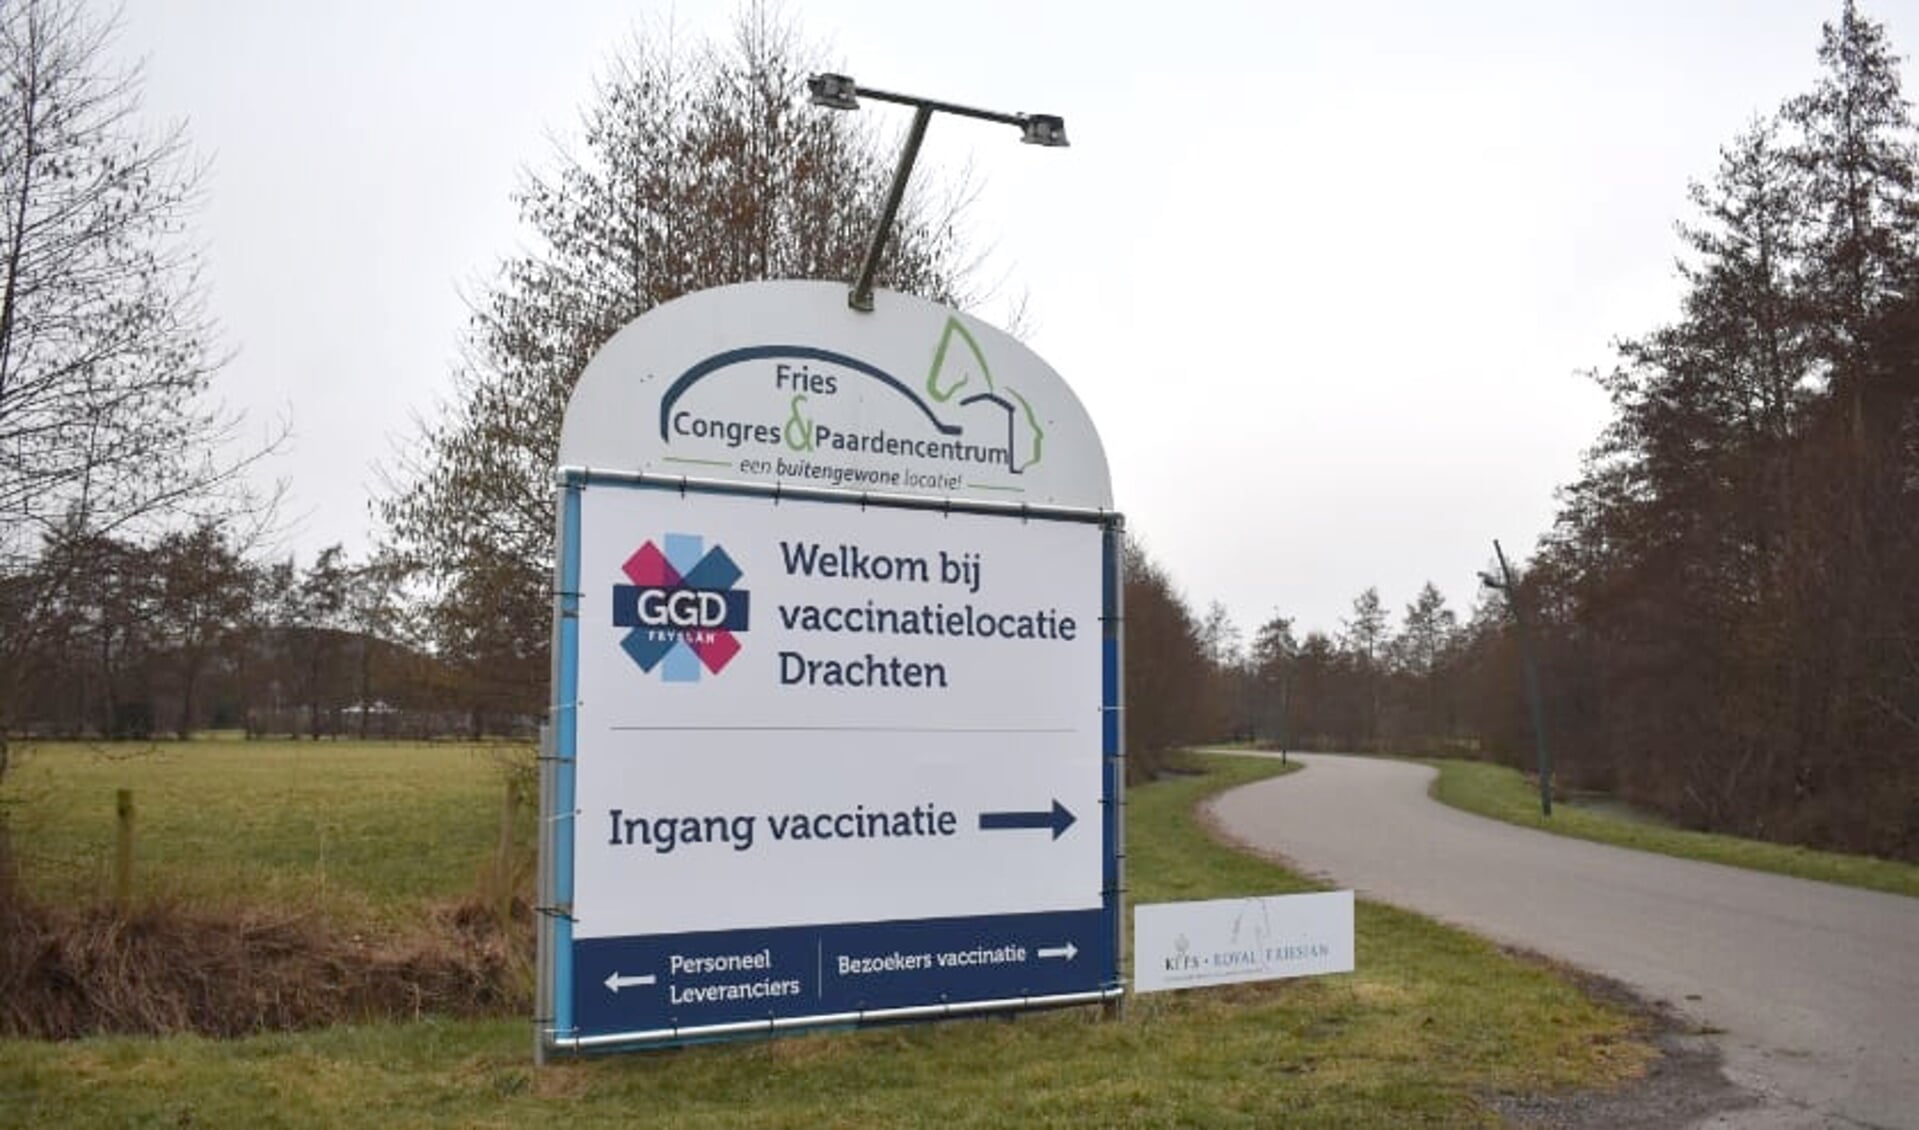 GGD Fryslân vaccineert nu ook in het Fries Congres Centrum in Drachten.